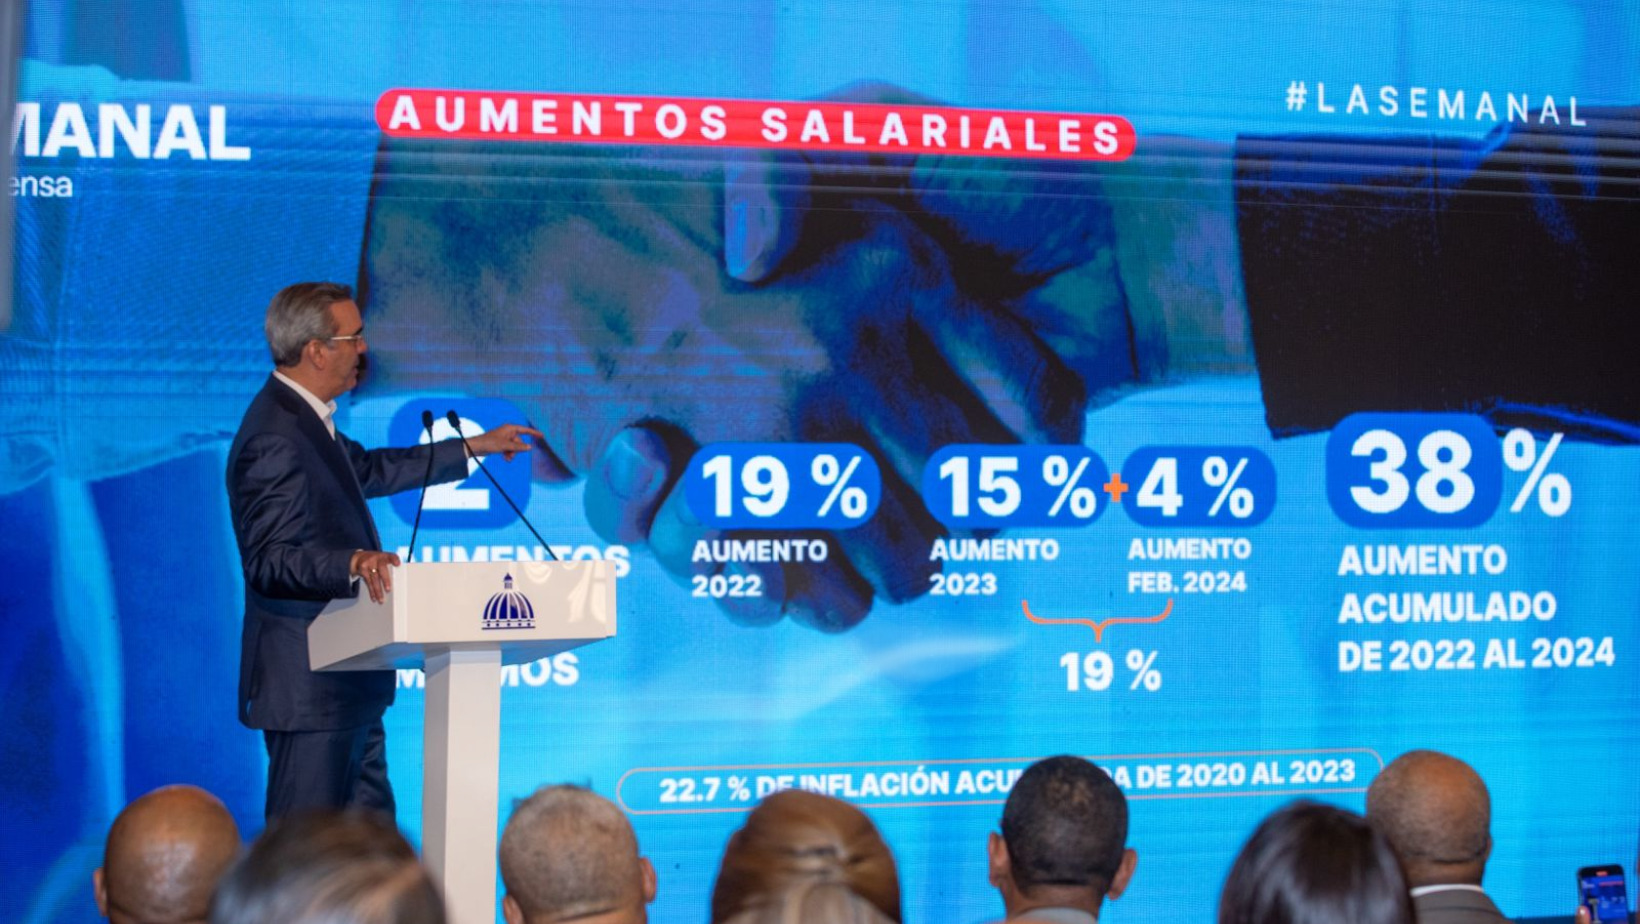 El presidente de la República Luis Abinader durante el encuentro LA Semanal. FOTO: Fuente externa